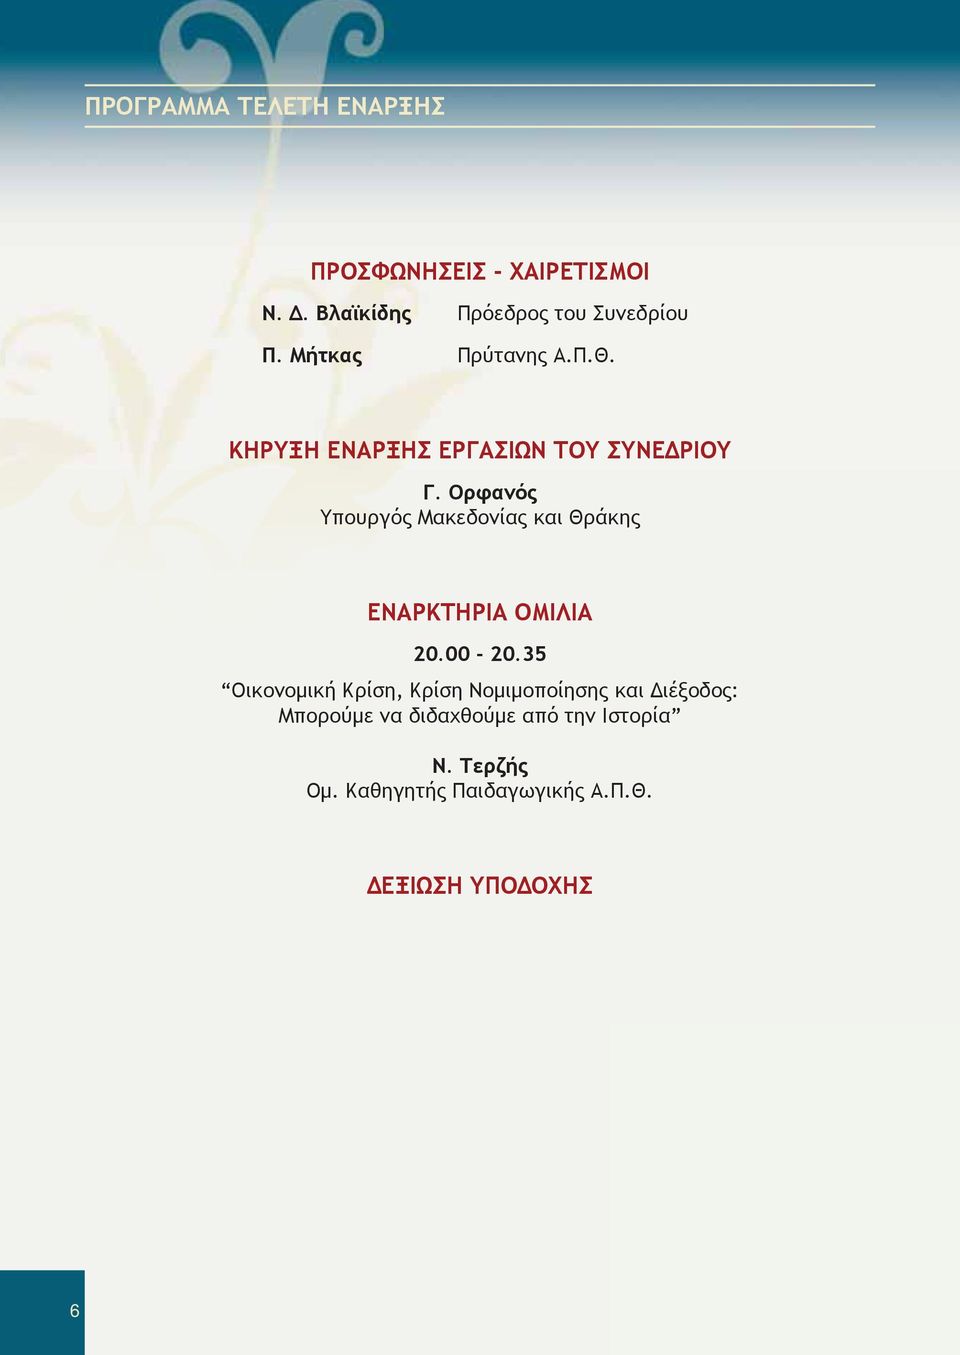 Ορφανός Υπουργός Μακεδονίας και Θράκης ΕΝΑΡΚΤΗΡΙΑ ΟΜΙΛΙΑ 20.00-20.